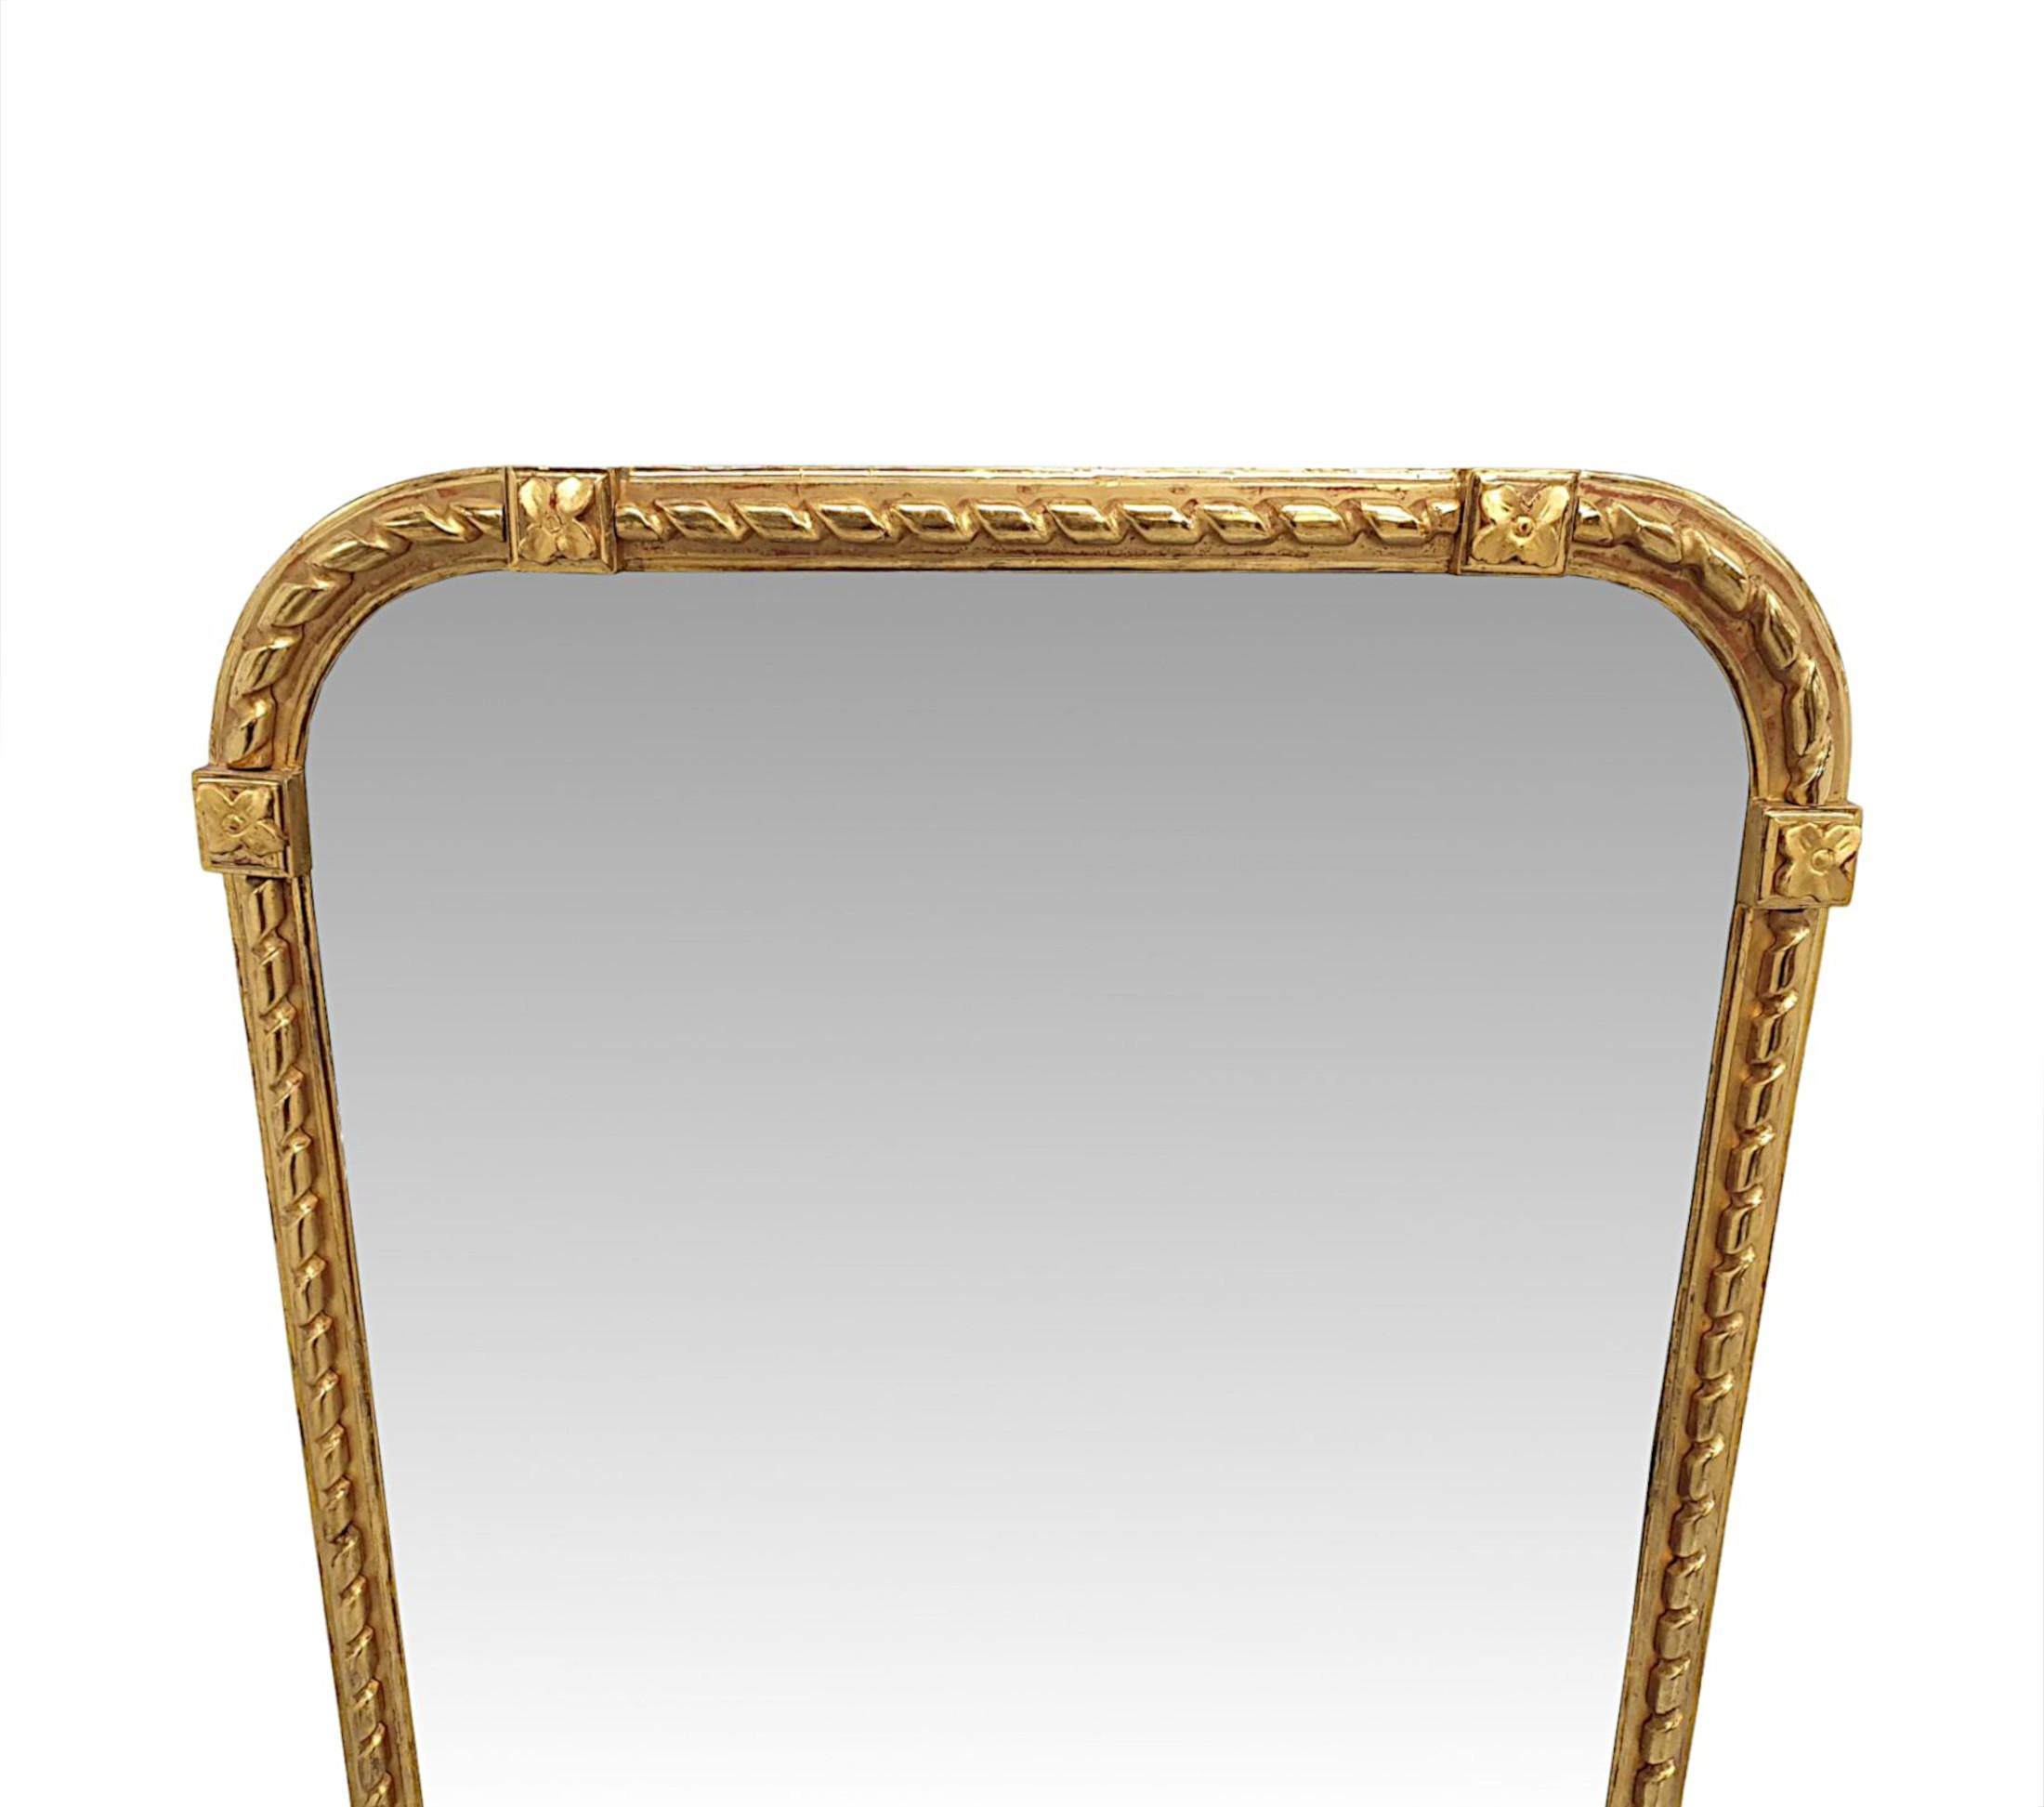 Eine fabelhafte 19. Jahrhundert overmantle Spiegel fein von Hand geschnitzt und von außergewöhnlicher Qualität.  Die Spiegelglasplatte in Bogenform befindet sich in einem eleganten, geformten und geriffelten Rahmen aus vergoldetem Holz mit